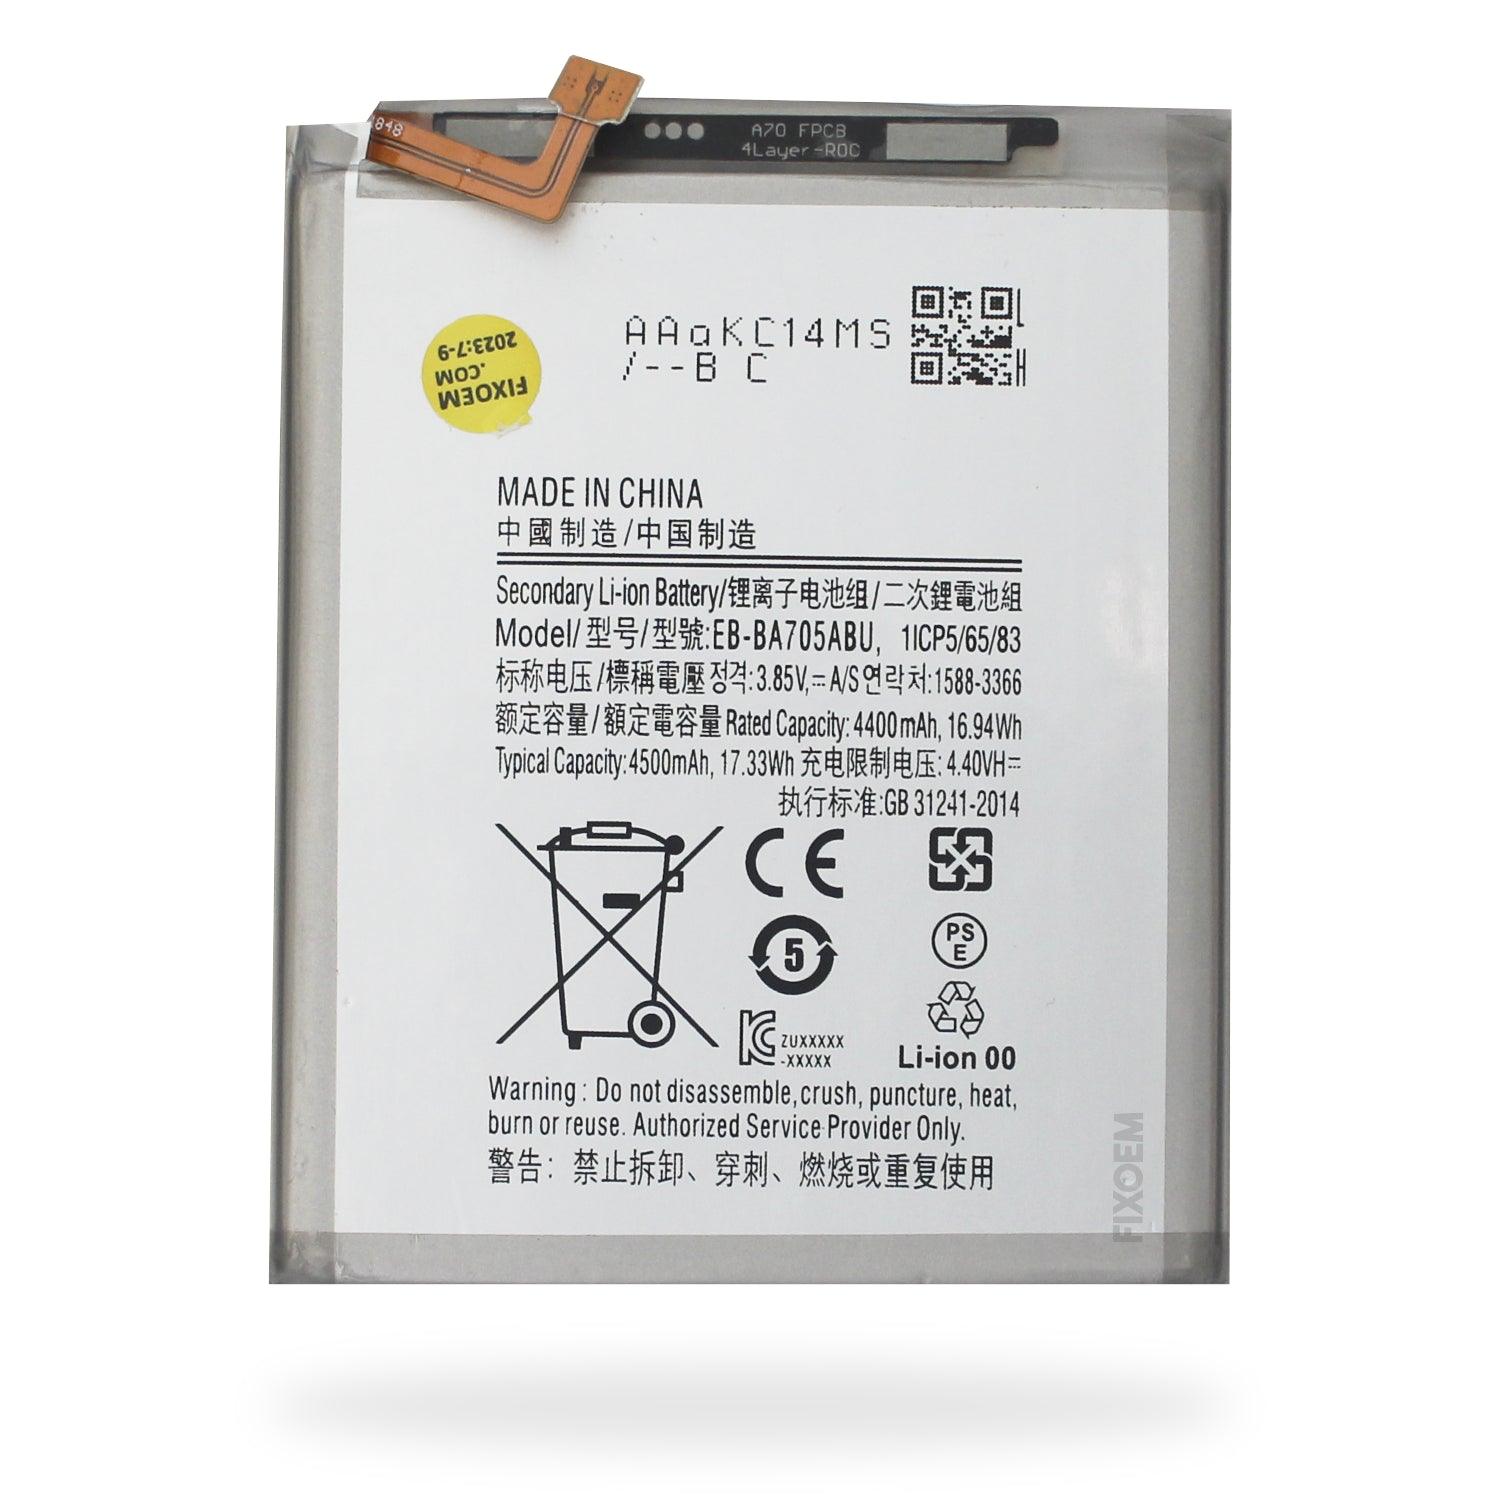 Bateria Samsung A70 Sm-A705F Eb-Ba705Abu a solo $ 120.00 Refaccion y puestos celulares, refurbish y microelectronica.- FixOEM